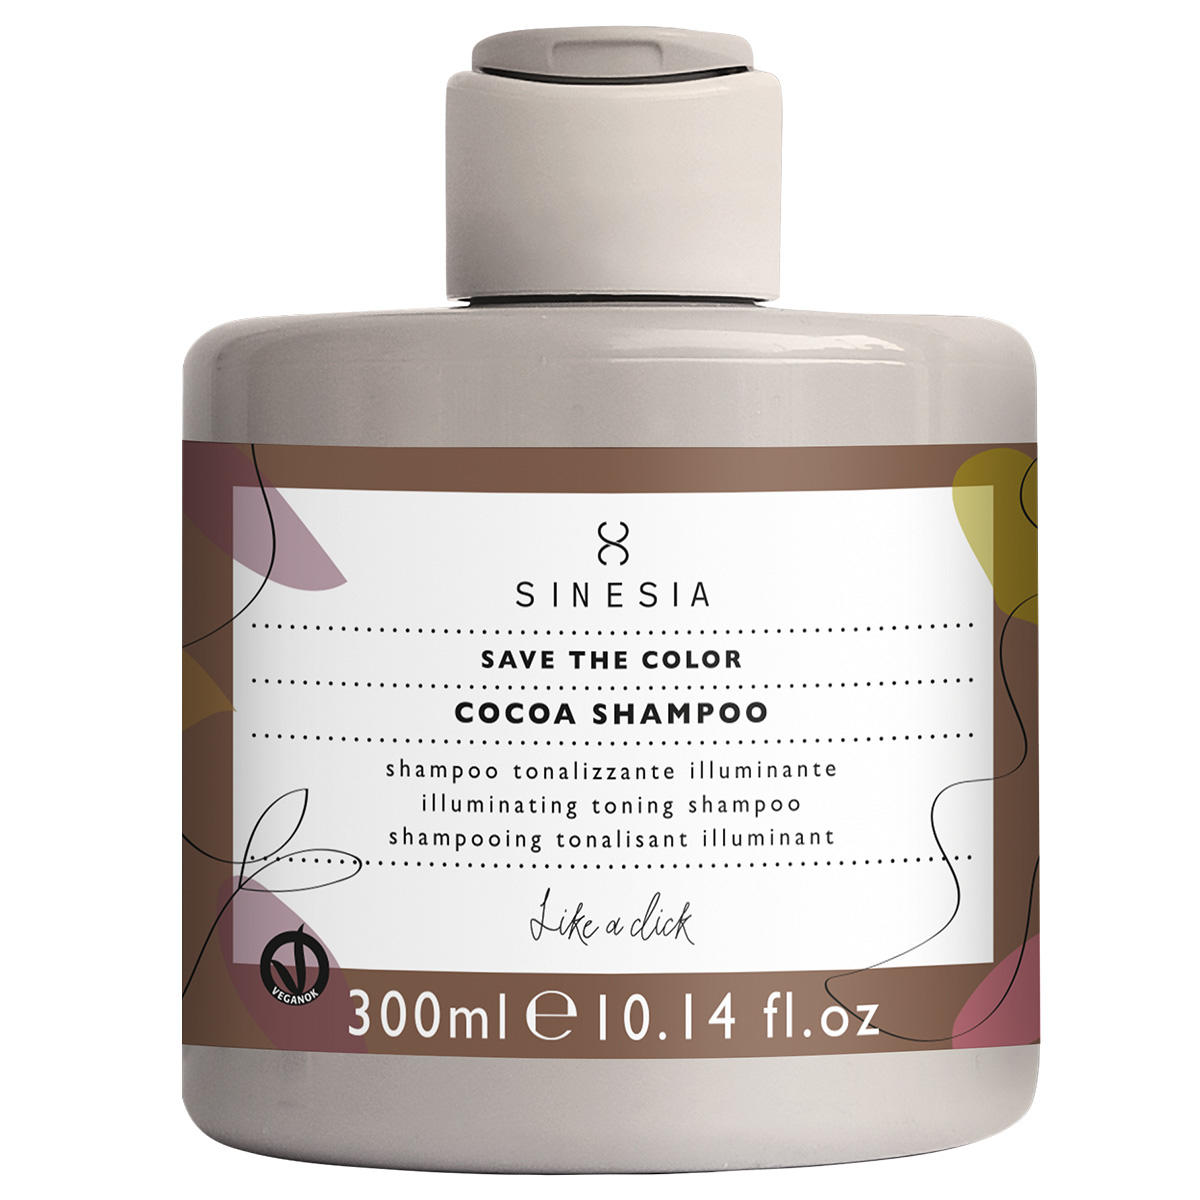 SINESIA Save the Color Cocoa Shampoo 300 ml - 1